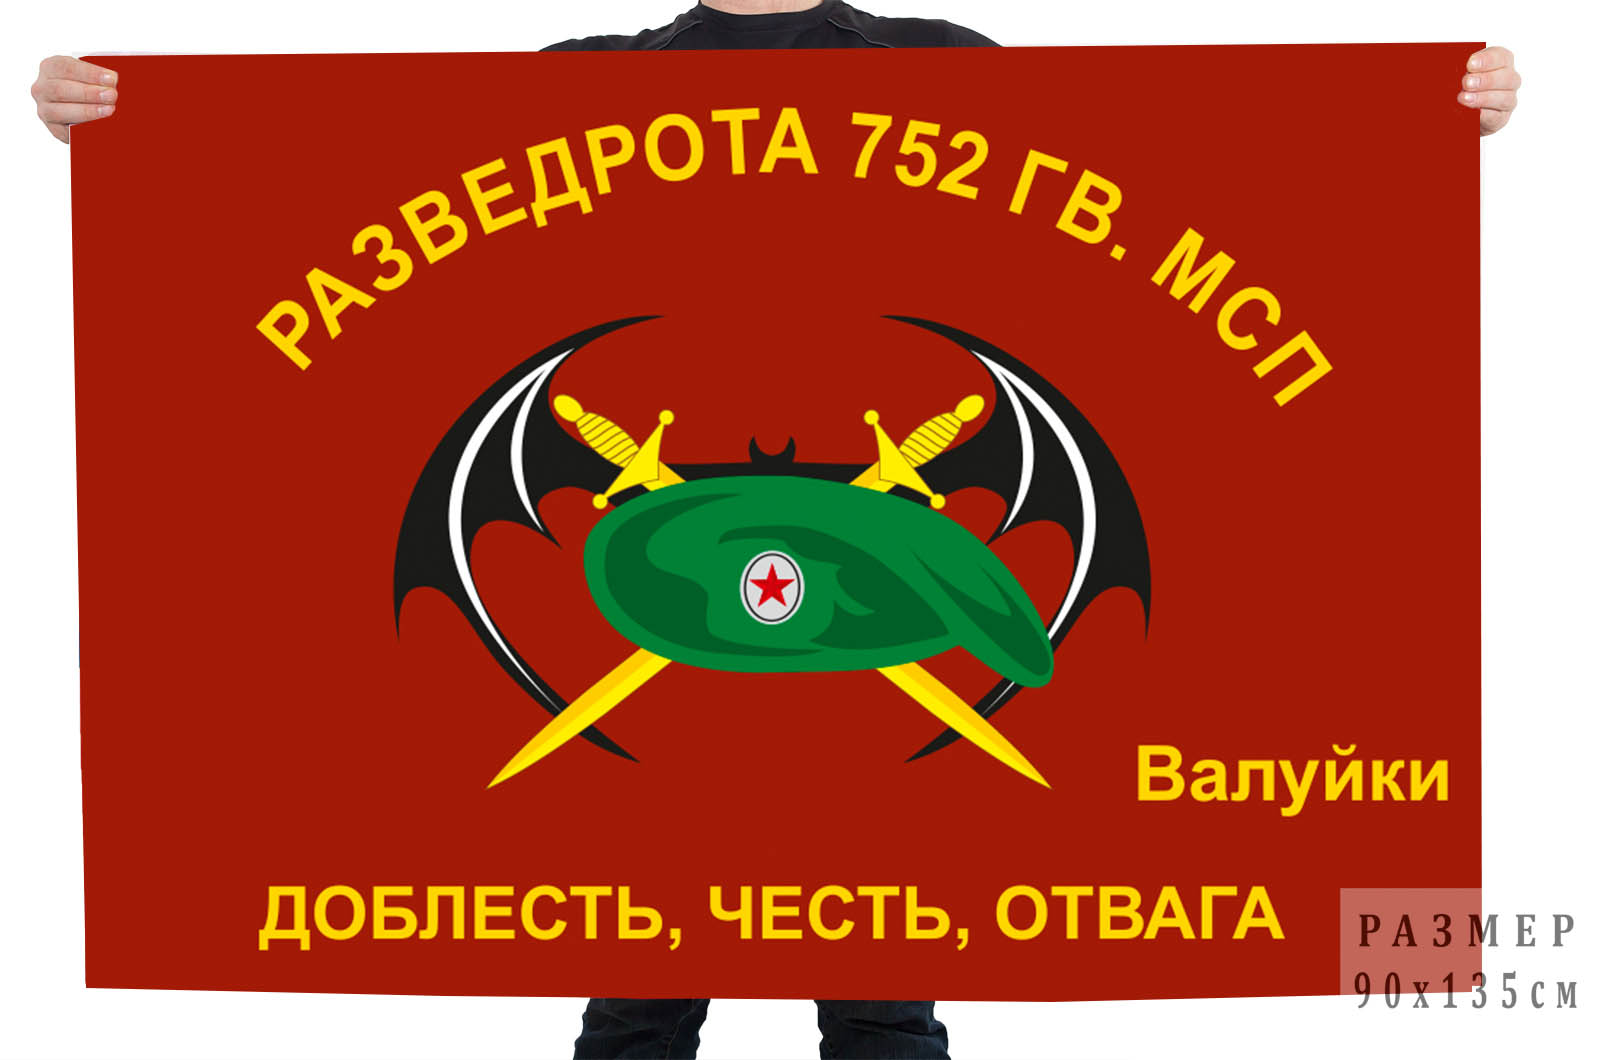 Флаг Разведроты 752 Гв. МСП